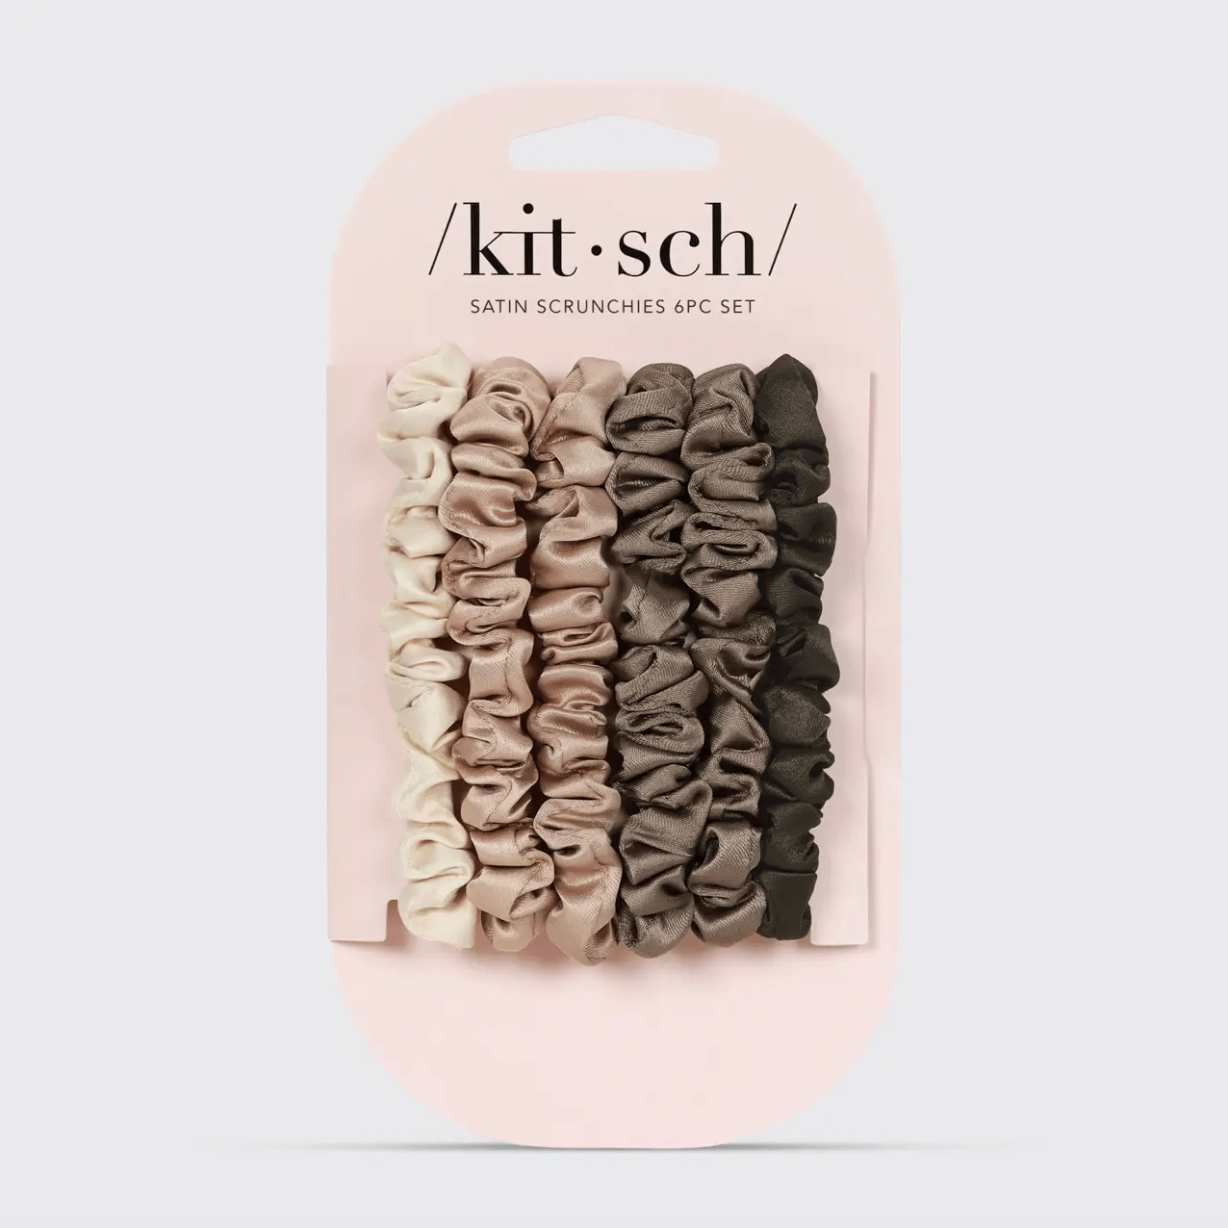 KITSCH | Satin Scrunchies 6 Piece Set